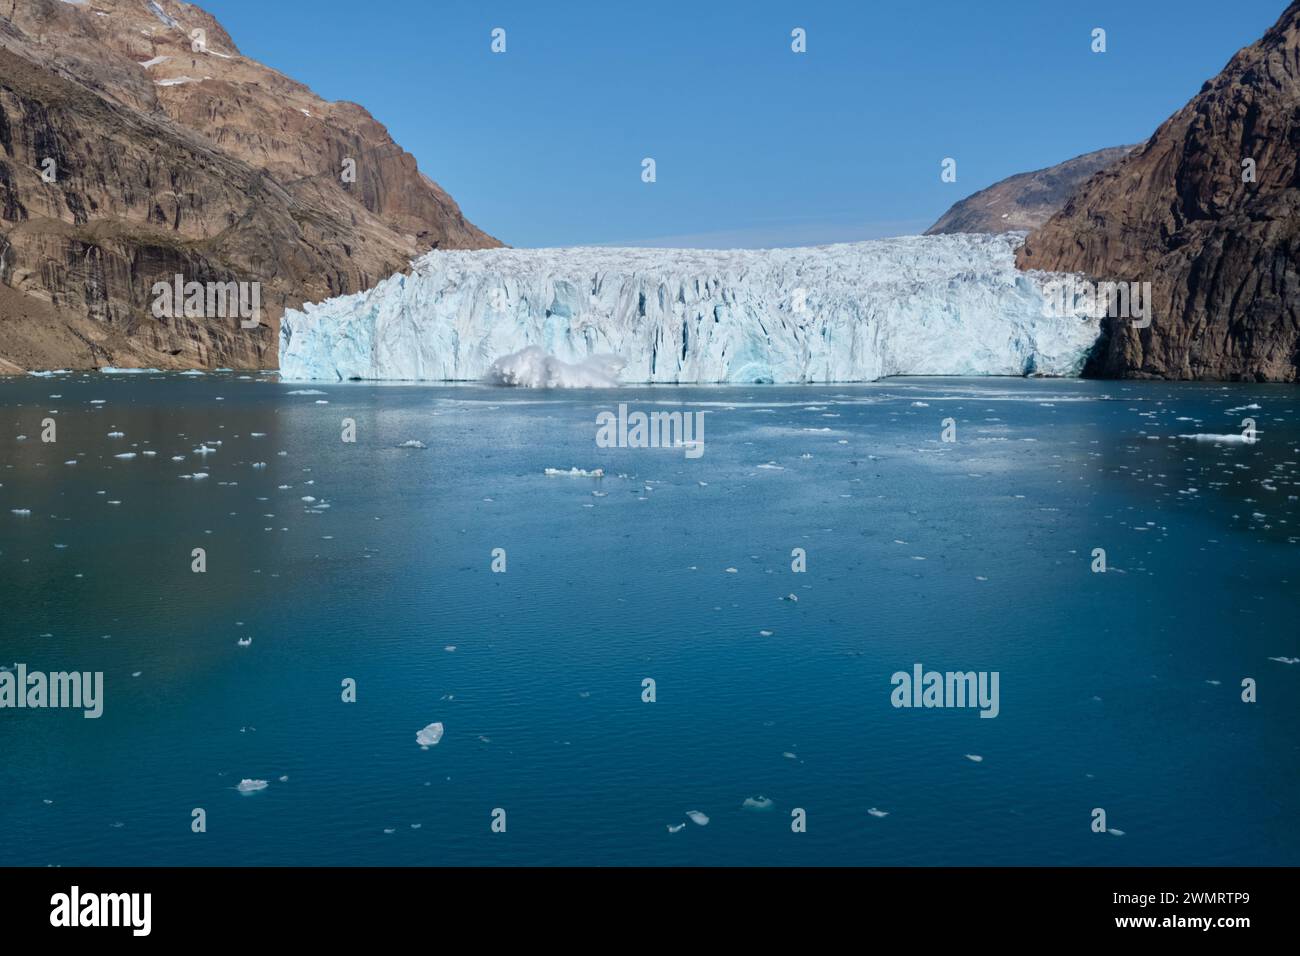 Le glacier Kuannit met bas dans les eaux calmes d'un fjord au large de Prins Christian Sund, au sud du Groenland Banque D'Images